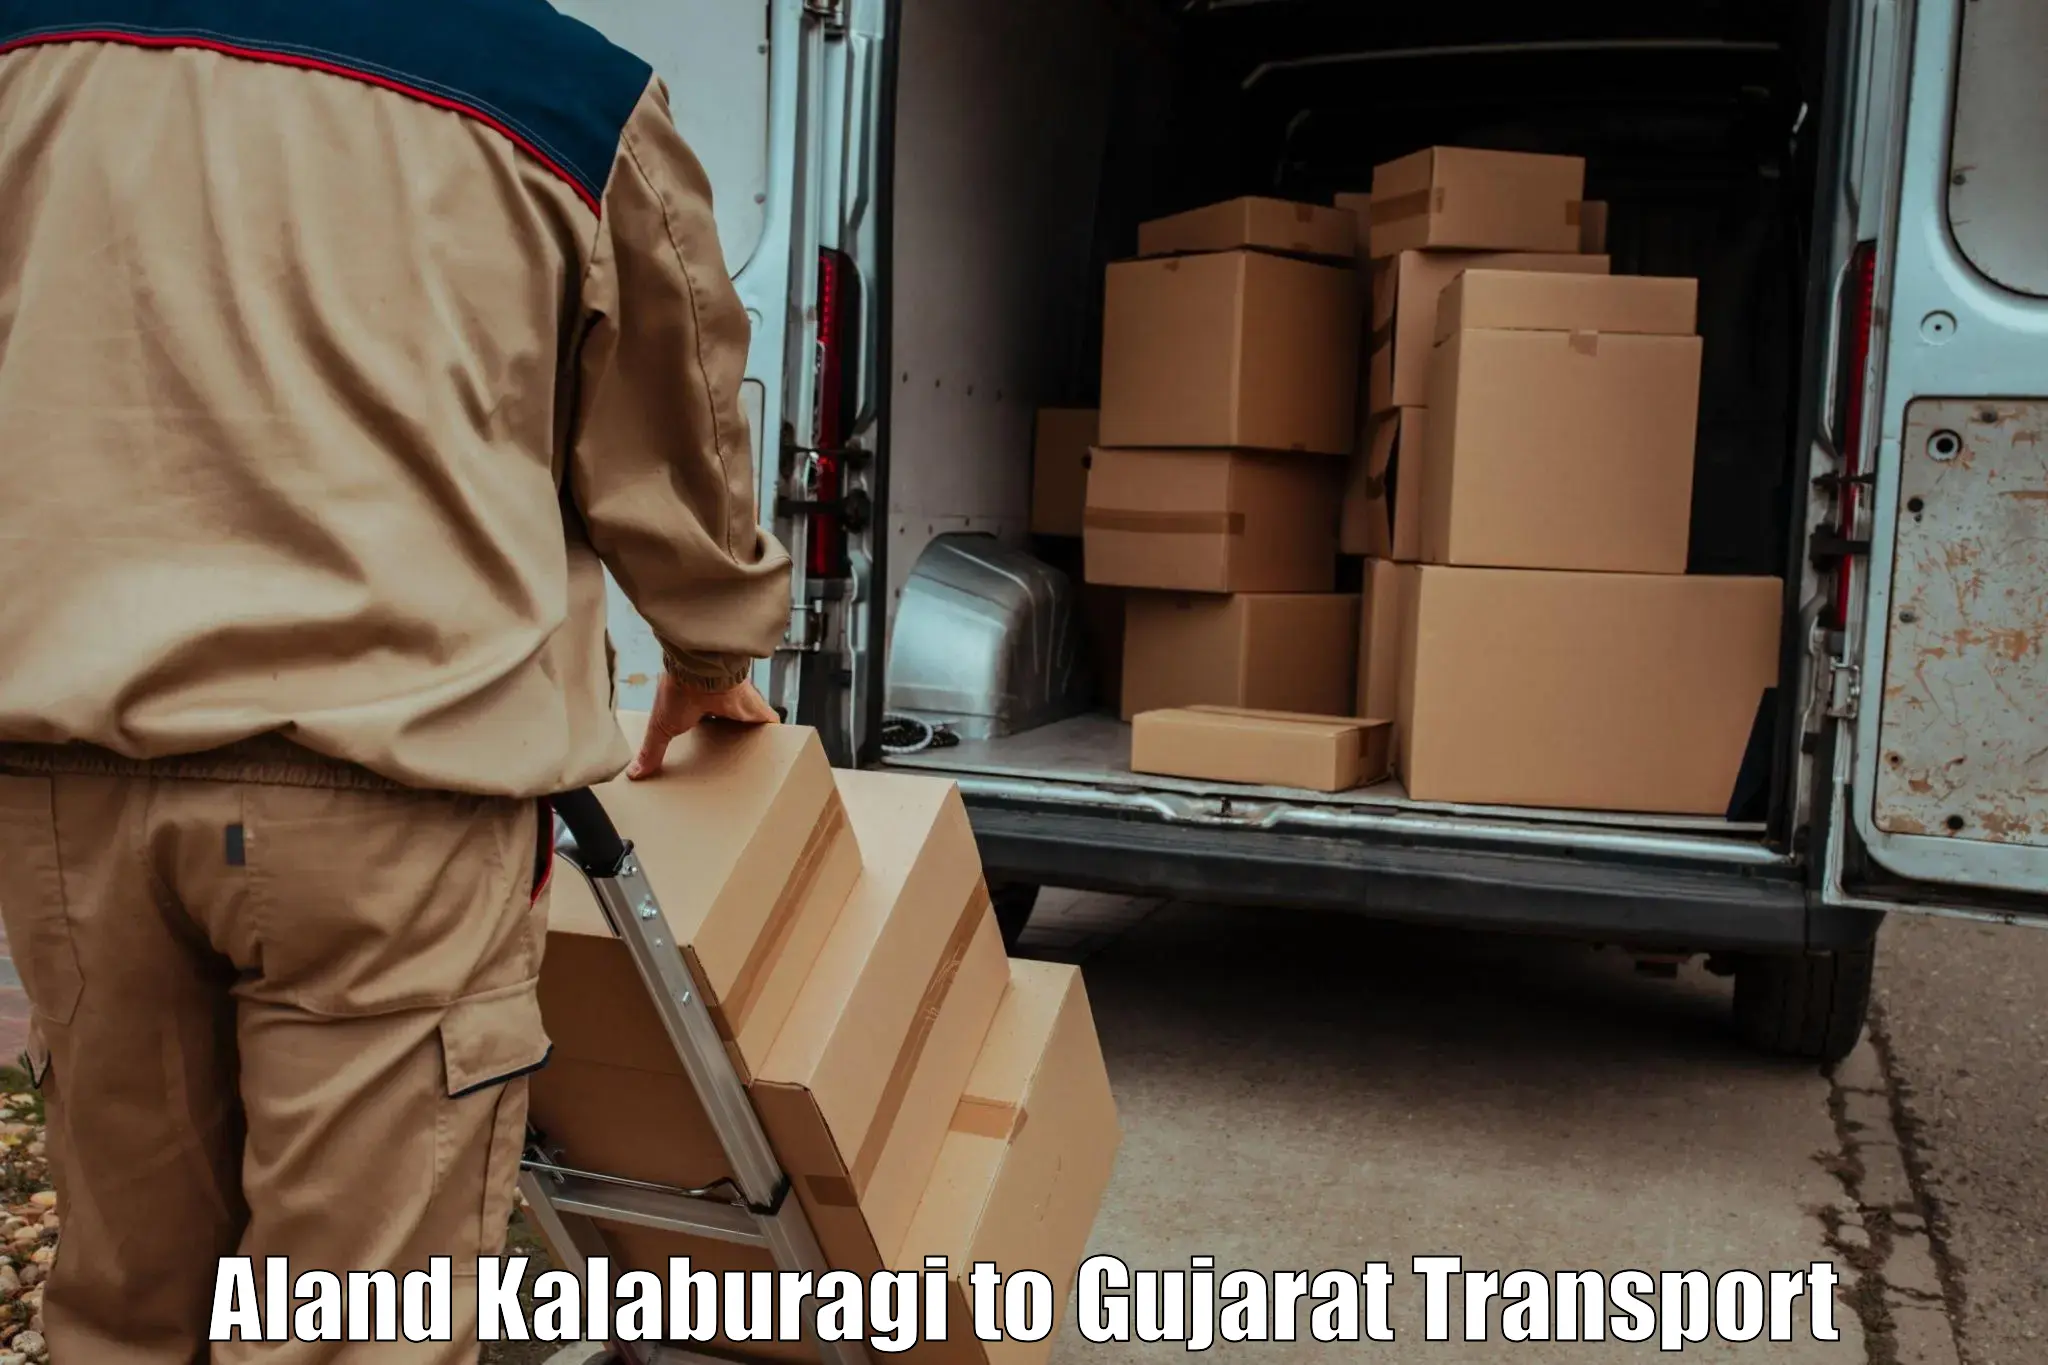 India truck logistics services Aland Kalaburagi to Mehsana